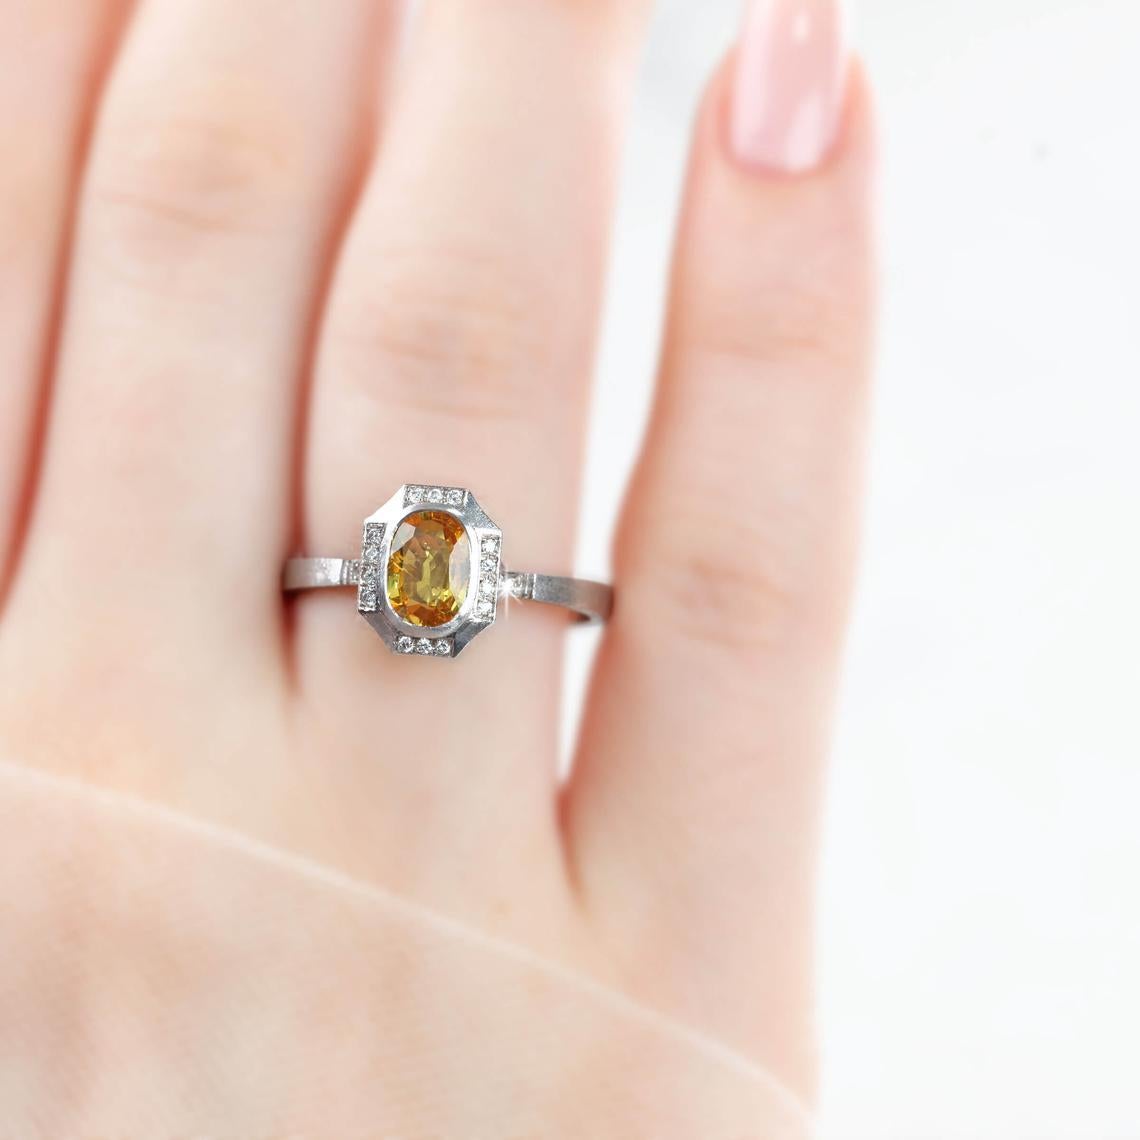 Vintage Yellow Sapphire With Diamond Engagement Ring, 14K Solitaire Ring, créé par les mains de l'anneau aux formes de la pierre. De bonnes idées de bague de déclaration ou de bague de fiançailles pour elle.

J'ai utilisé un diamant jaune brillant